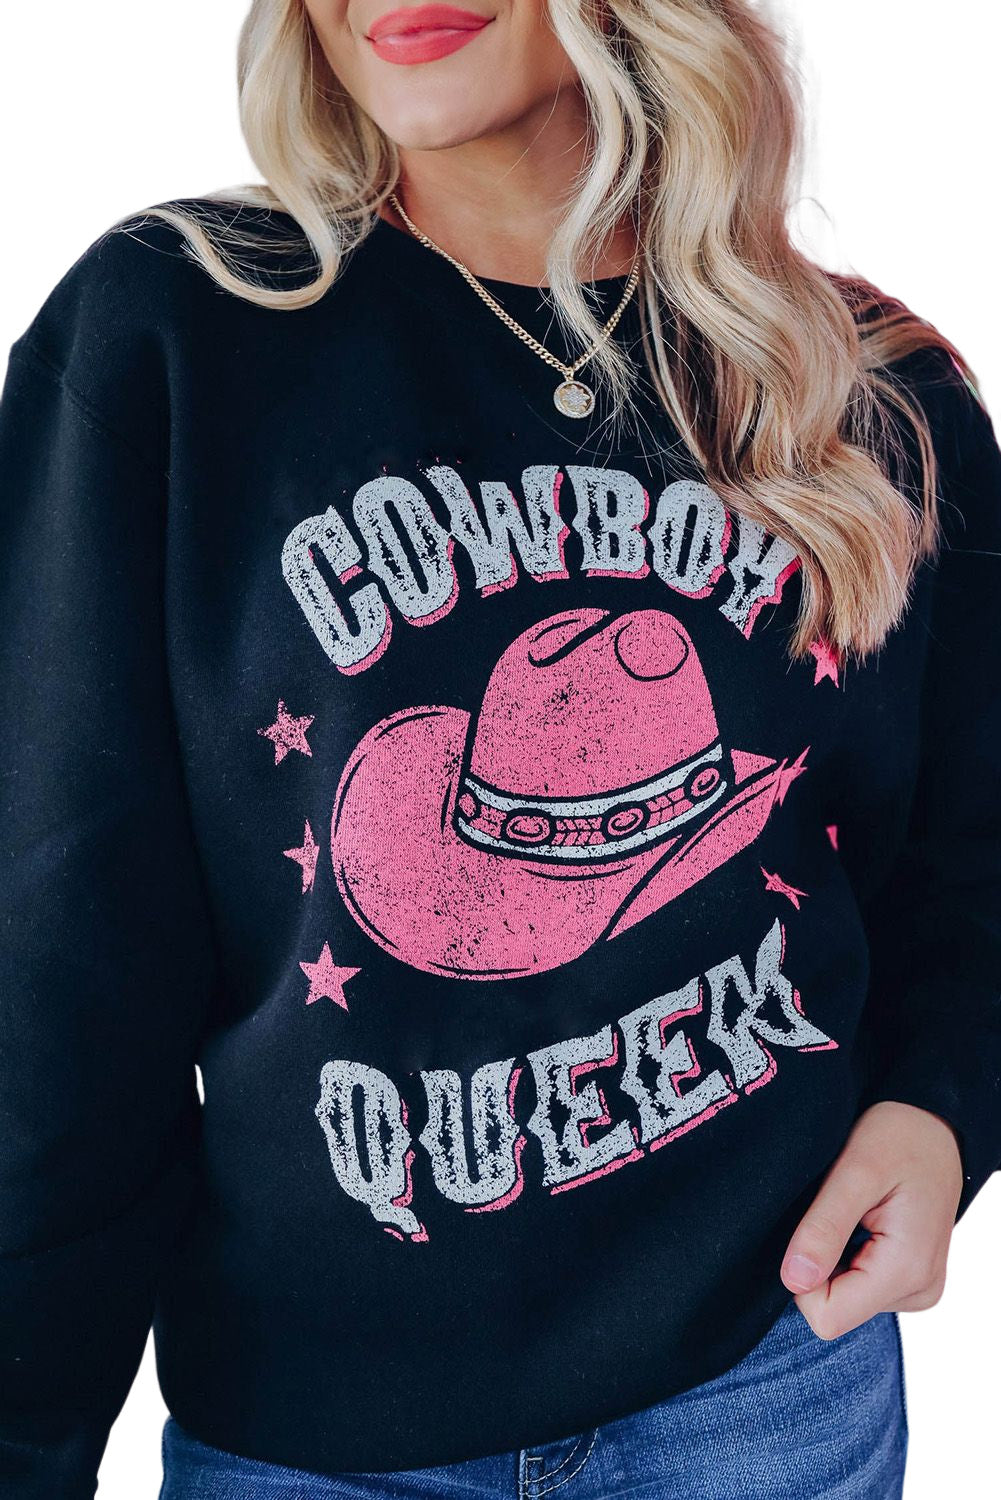 Black COWBOY QUEEN Hat Graphic Print Pullover Sweatshirt Graphic Sweatshirts JT's Designer Fashion